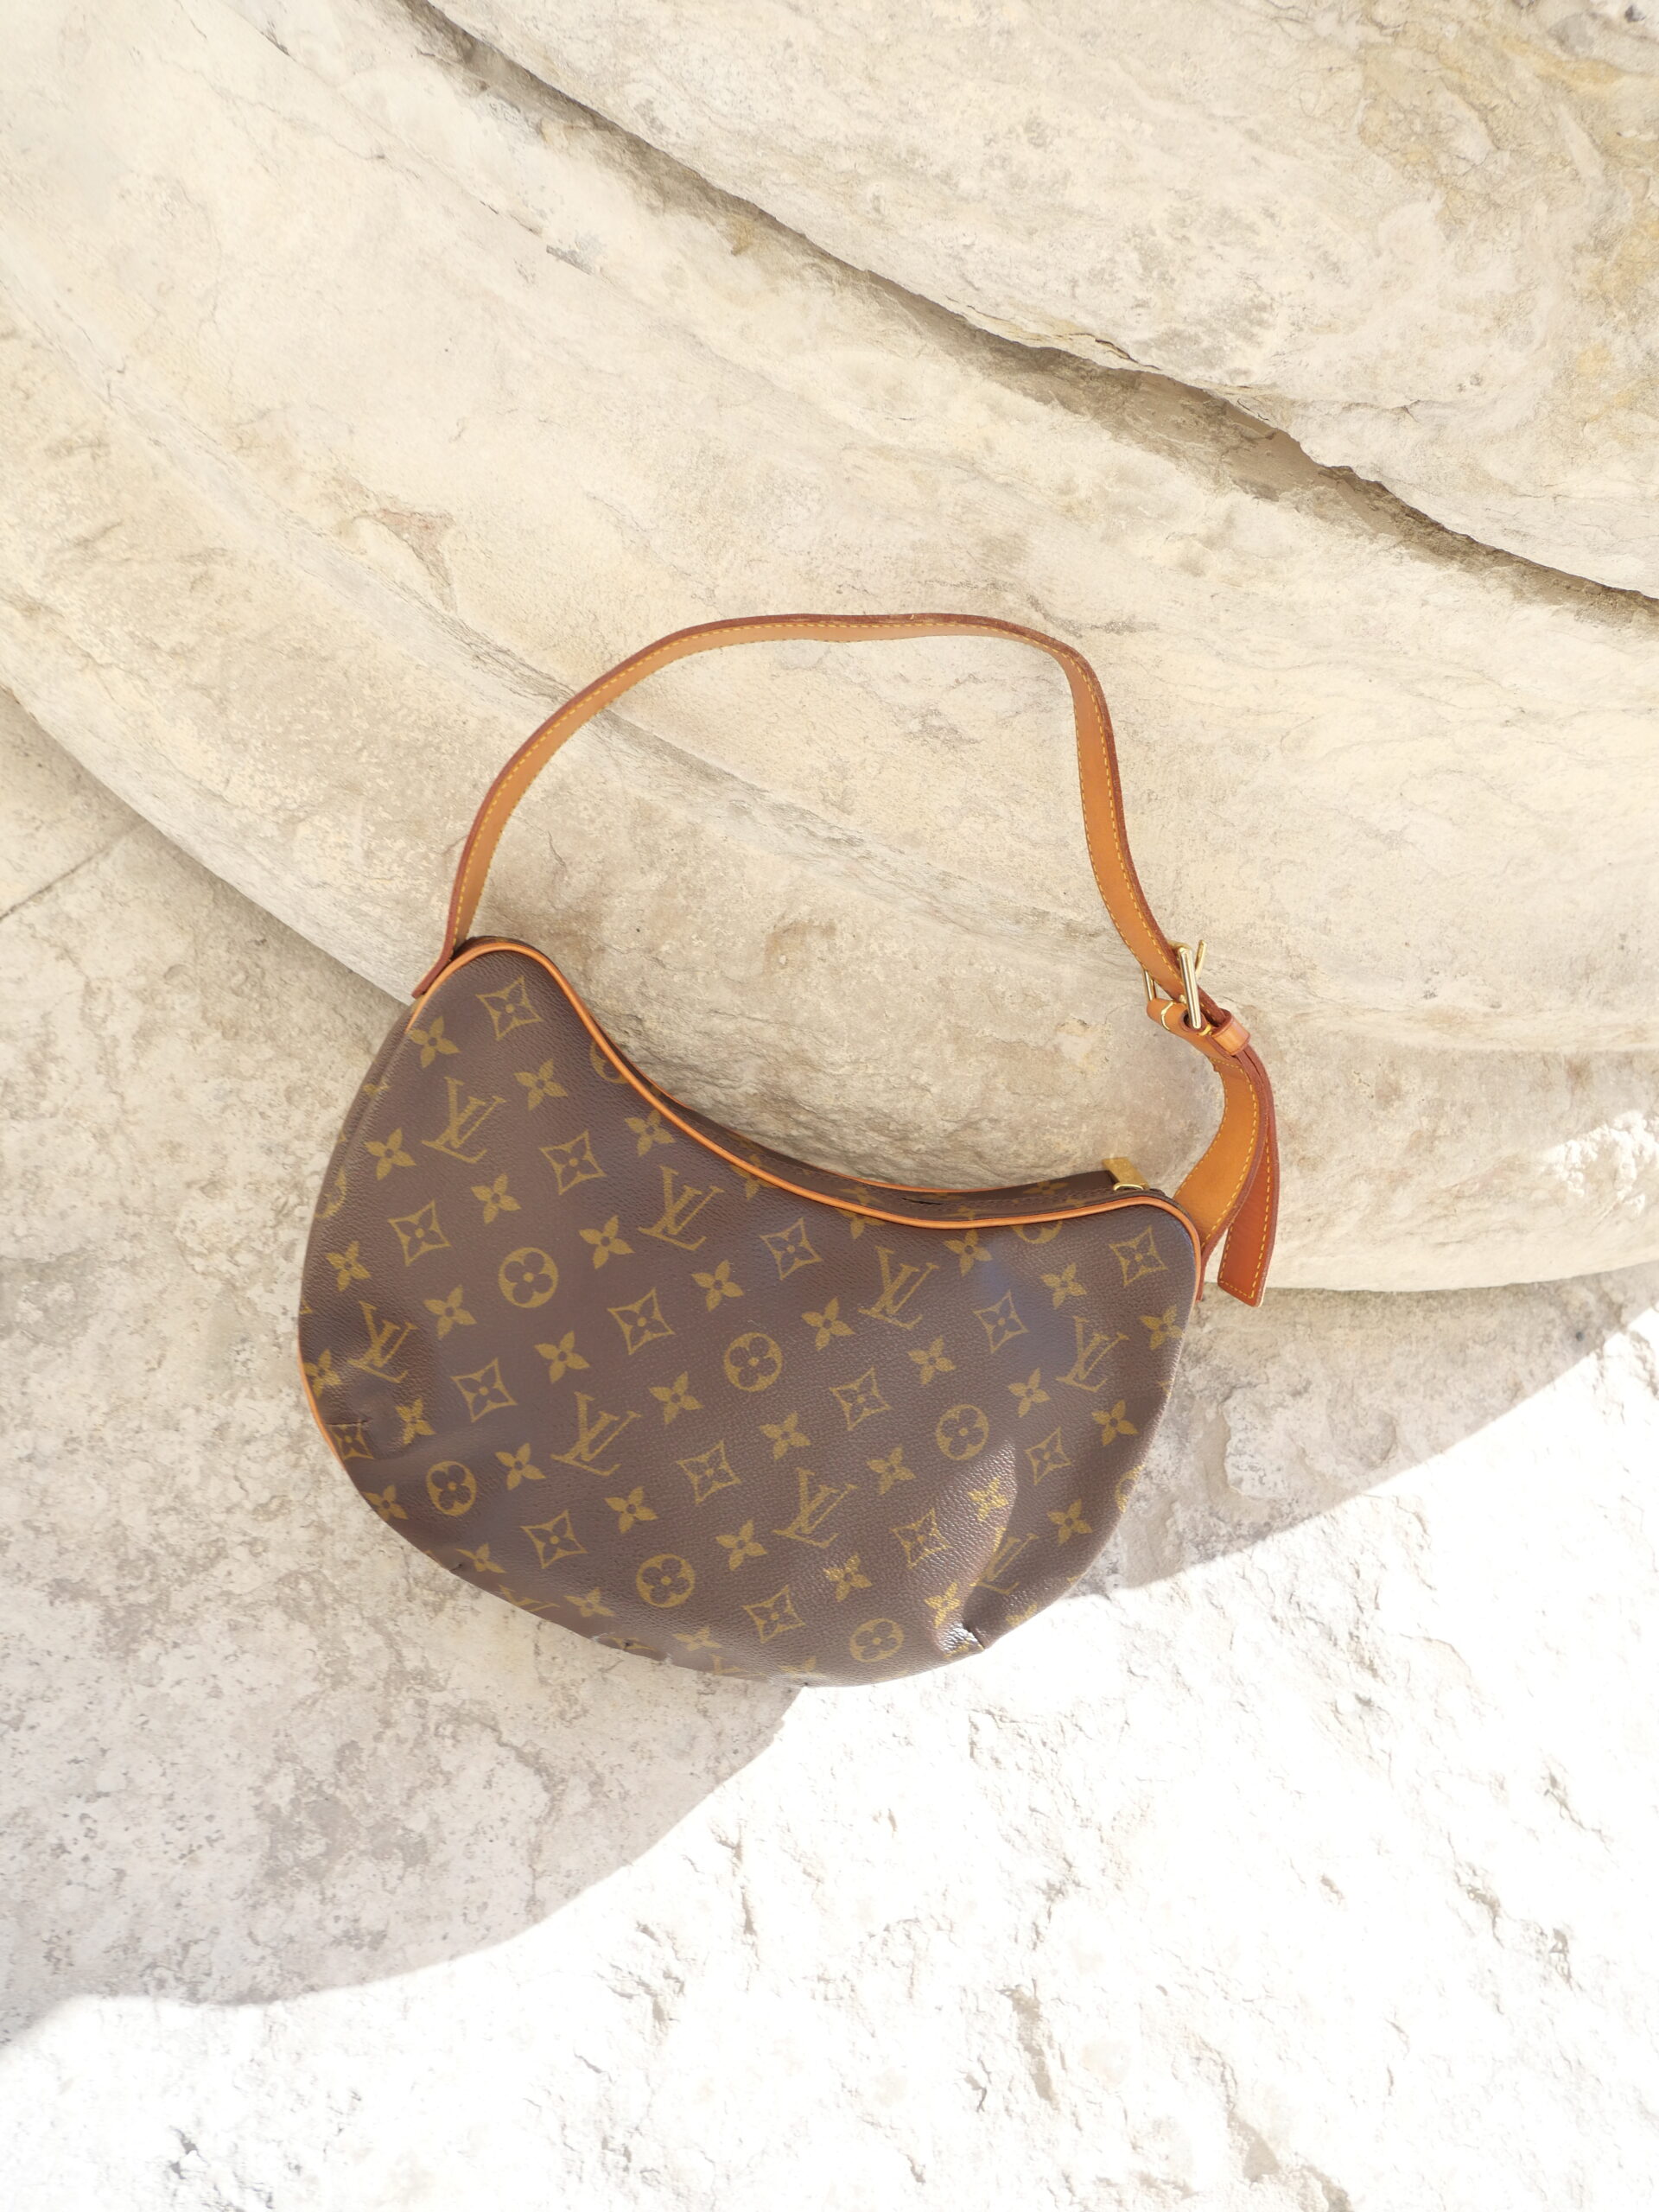 Louis-Vuitton-Tasche: Die 10 berühmtesten Modelle der Welt